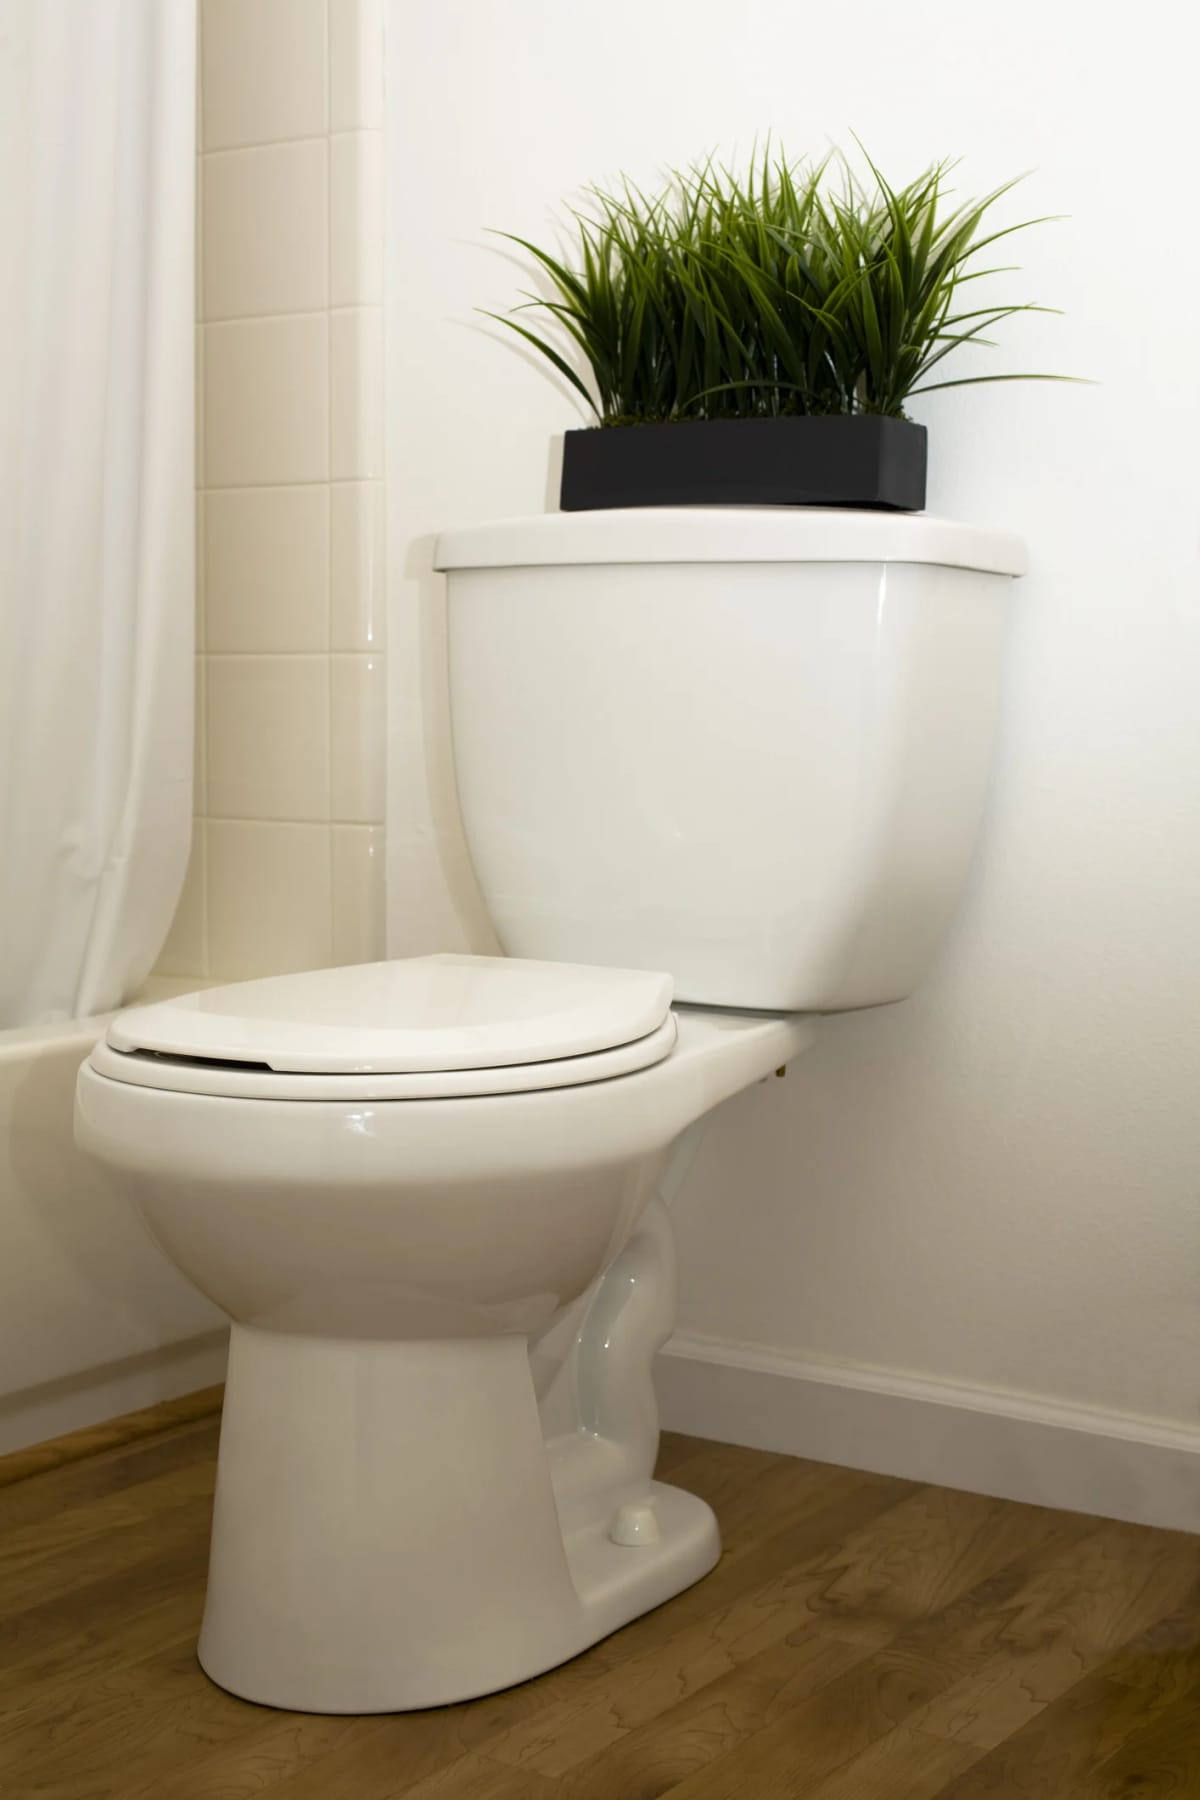 A toilet seat